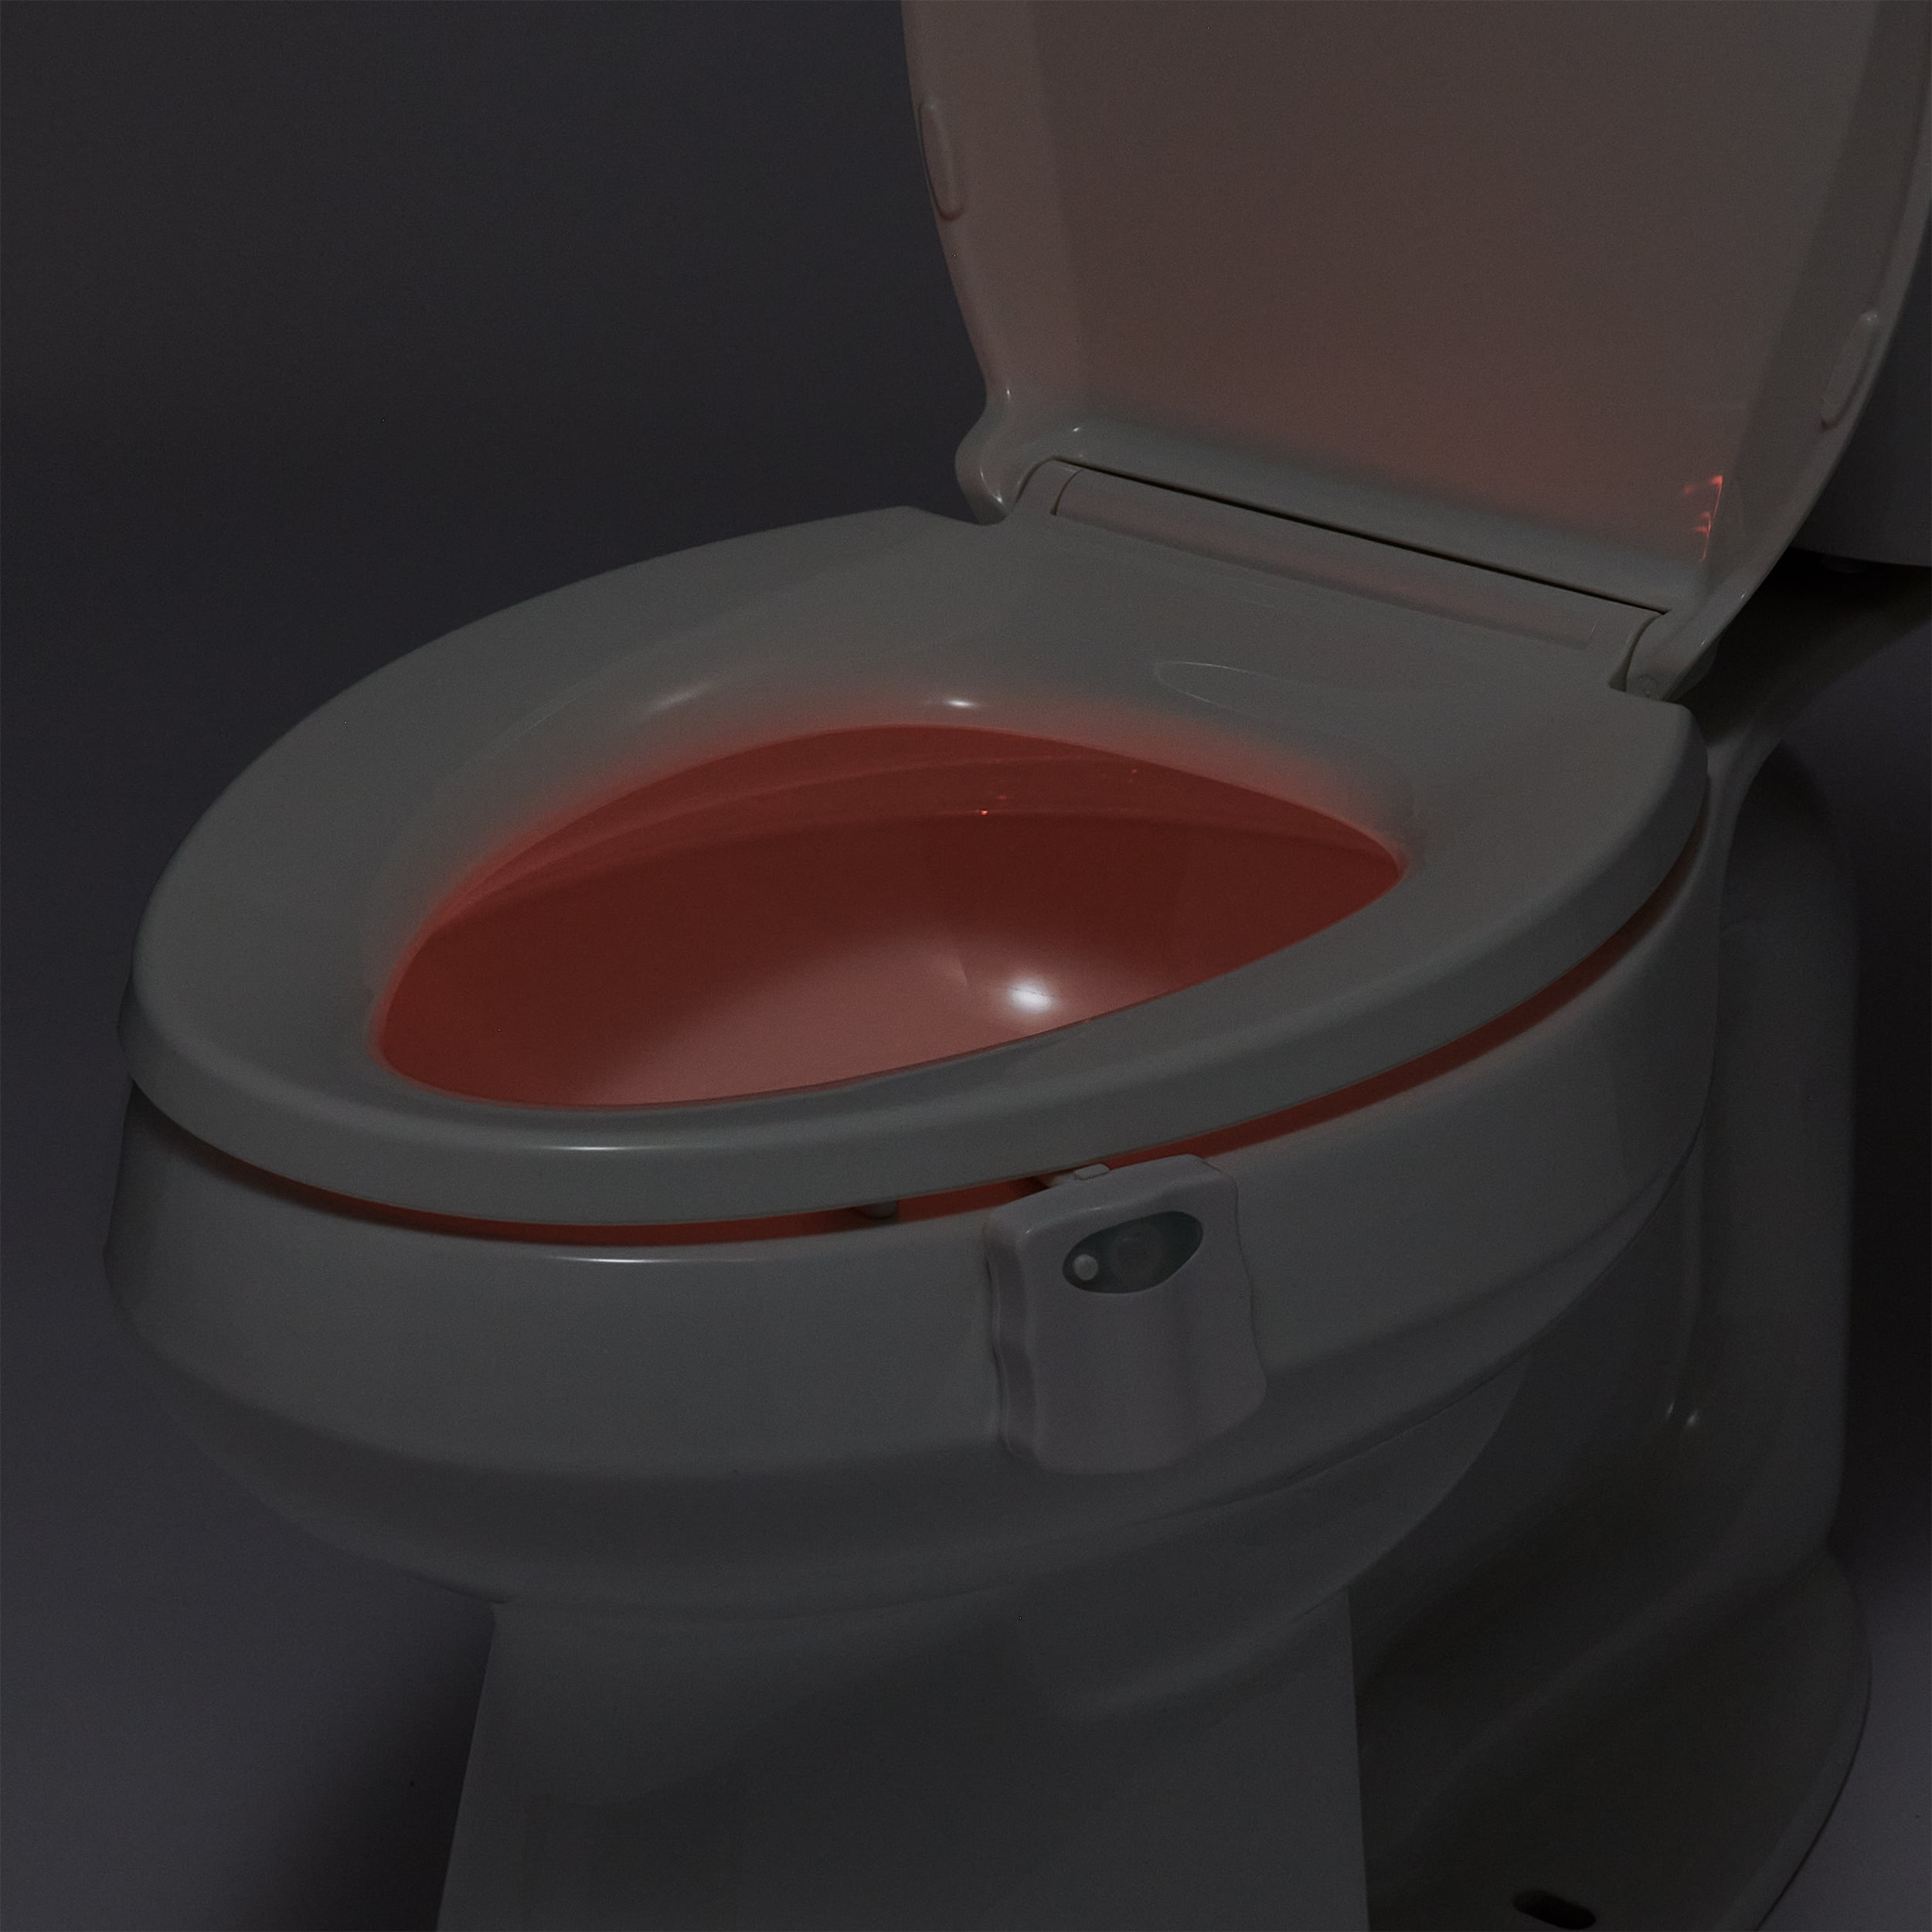 Medline Toilet Safety Light, Motion Activated Sensor, Color